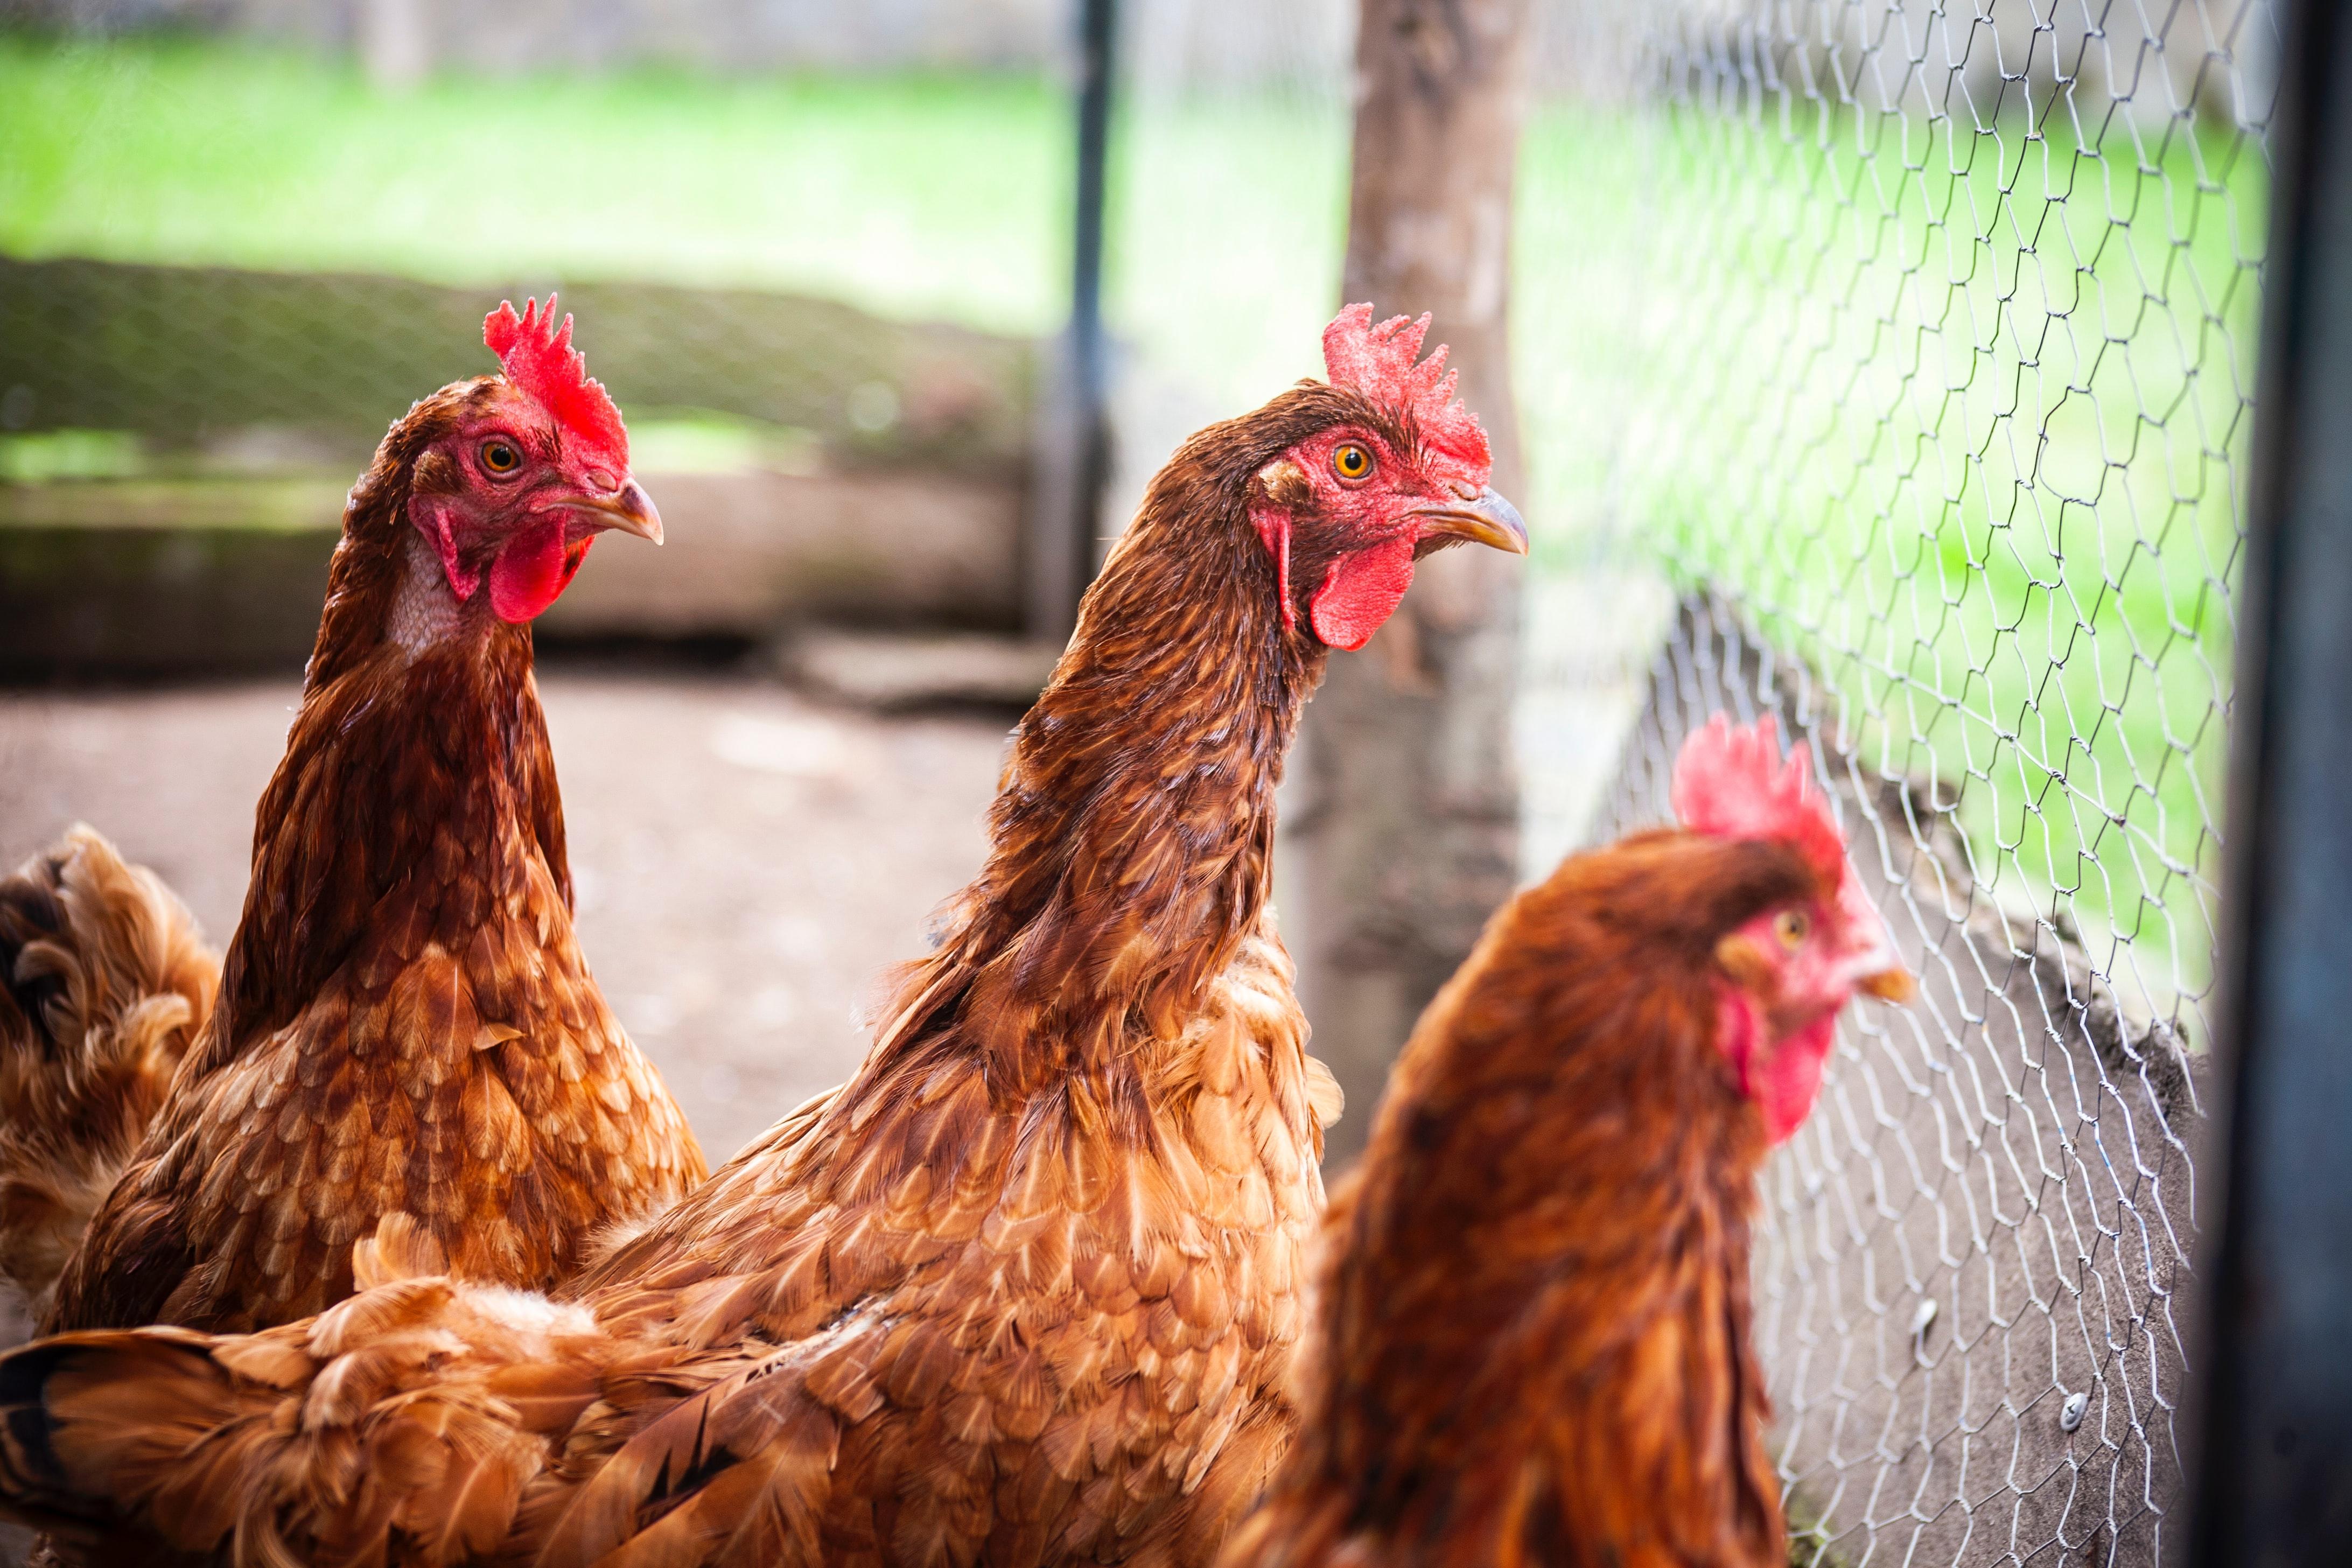 Varias gallinas miran desde el otro lado de la verja, confinadas. Dave Sandoval en Unsplash